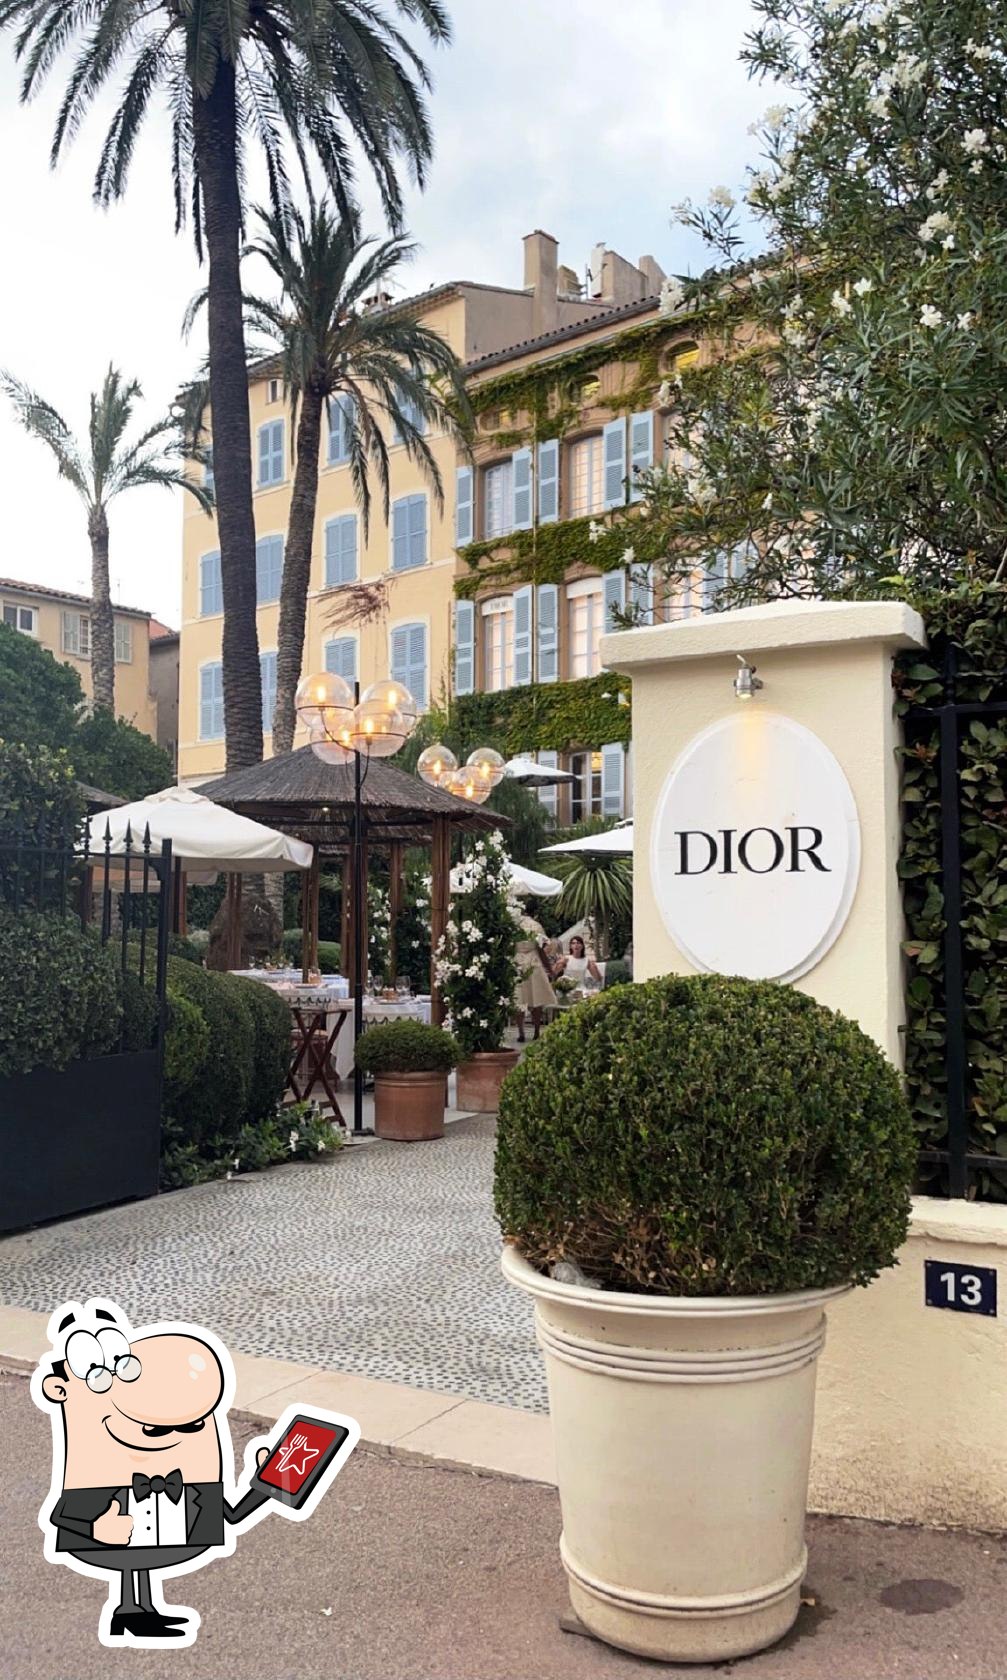 Dior Cafe des Lices on Rue François Sibilli, Saint-Tropez, Cote d